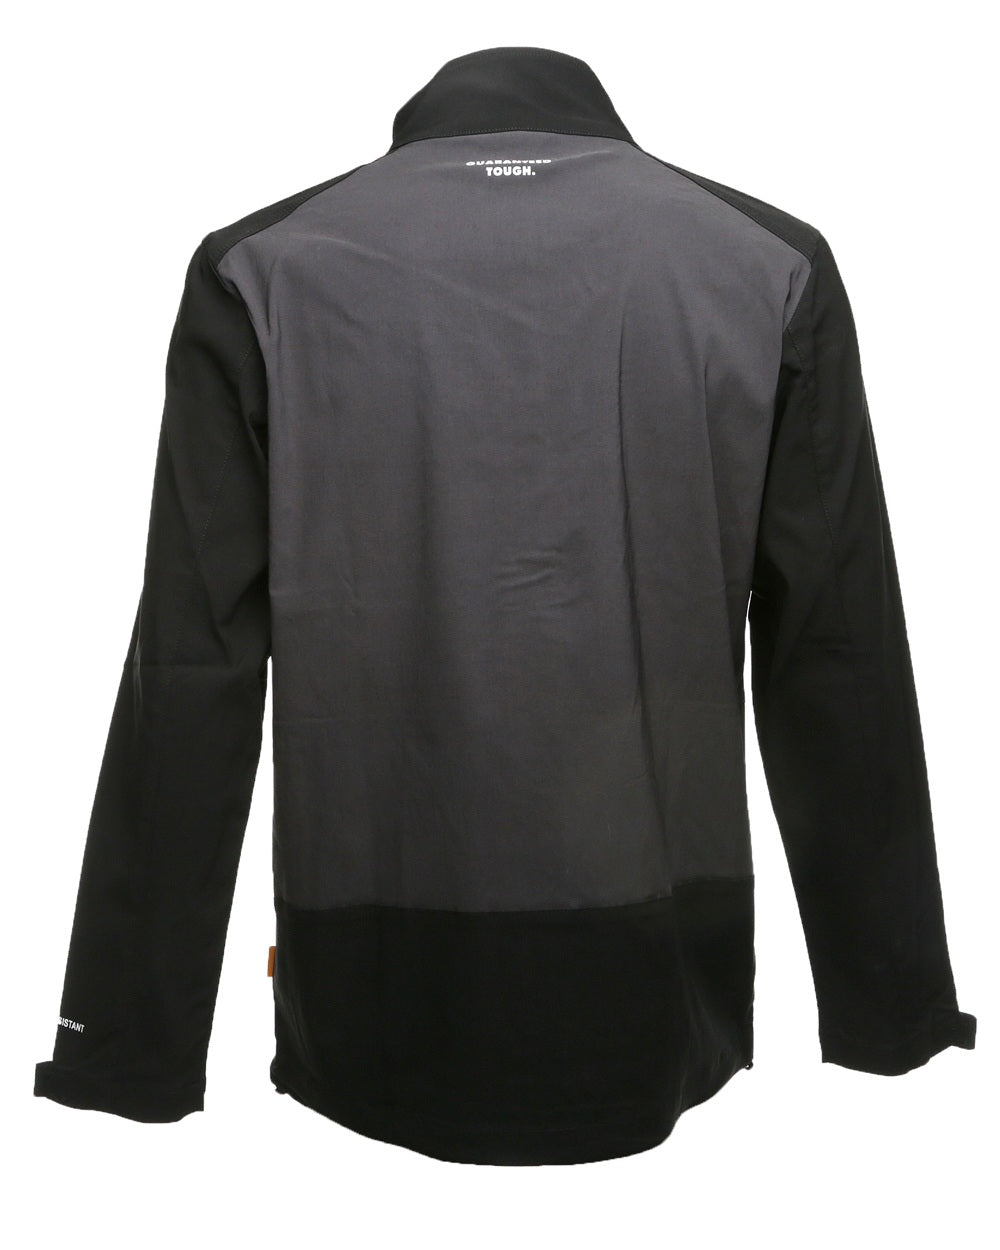 DeWalt Sydney Stretch Jacket in Grey Black